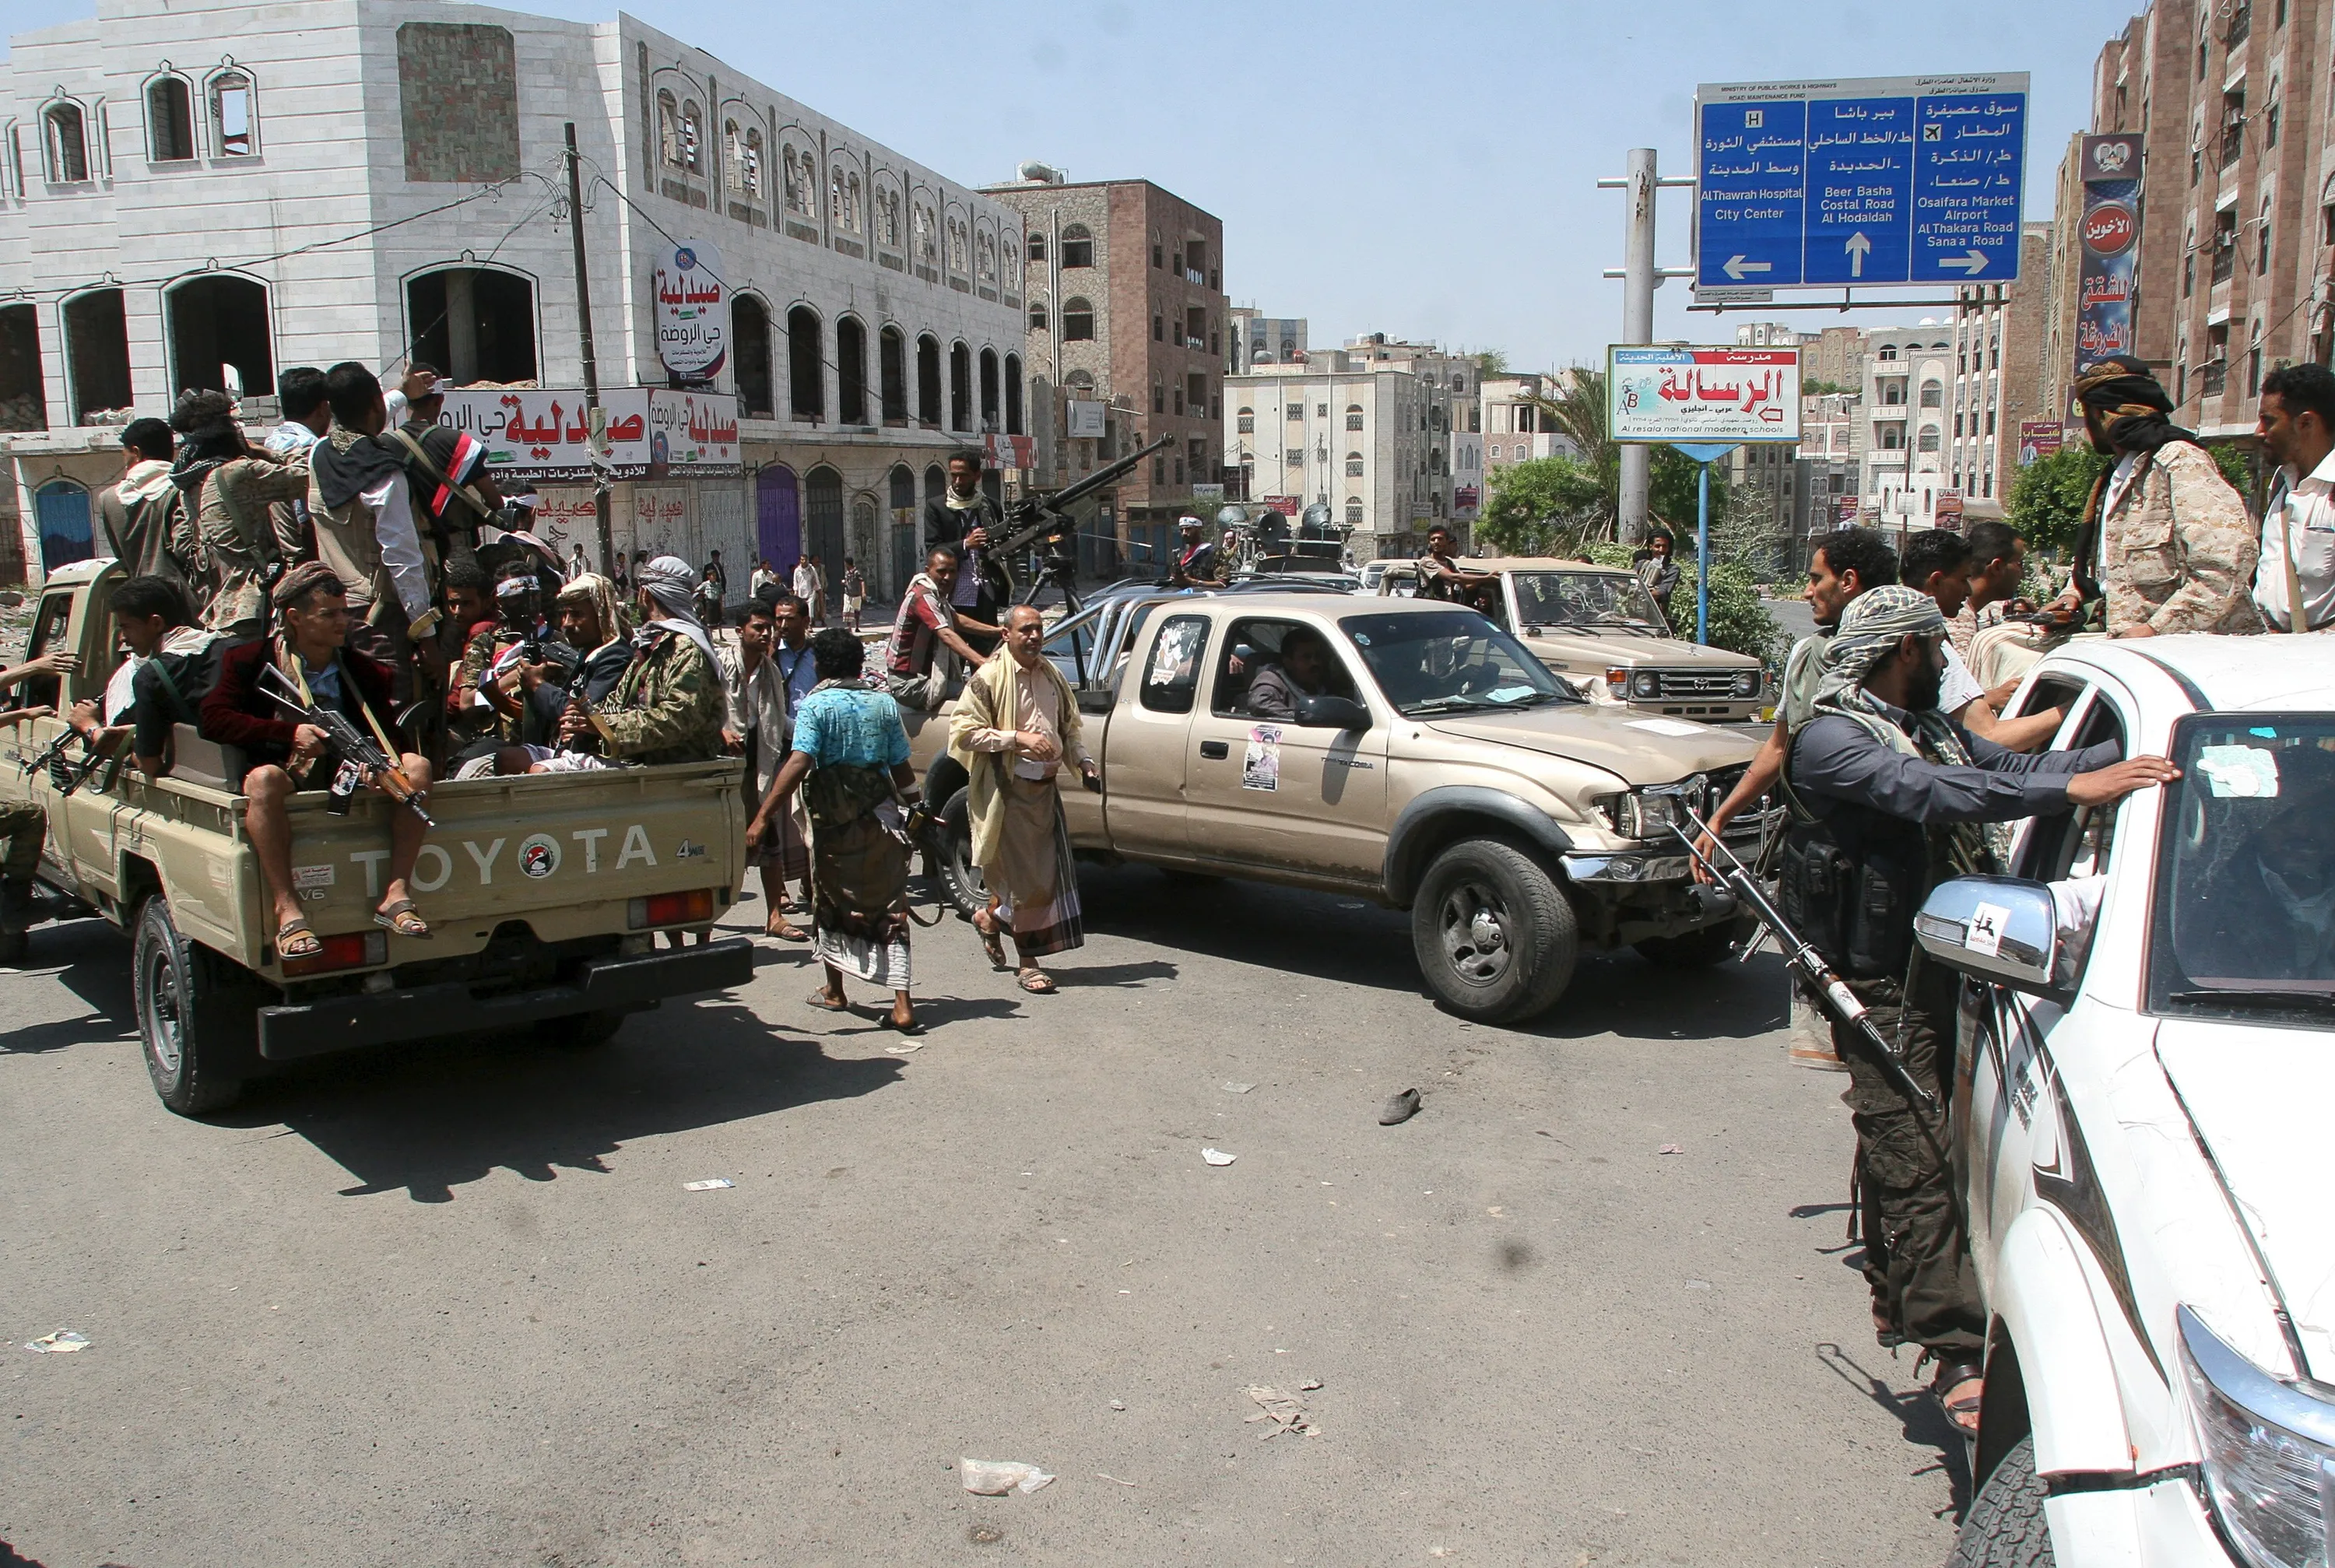 Yemen Chronicle by Steven C. Caton